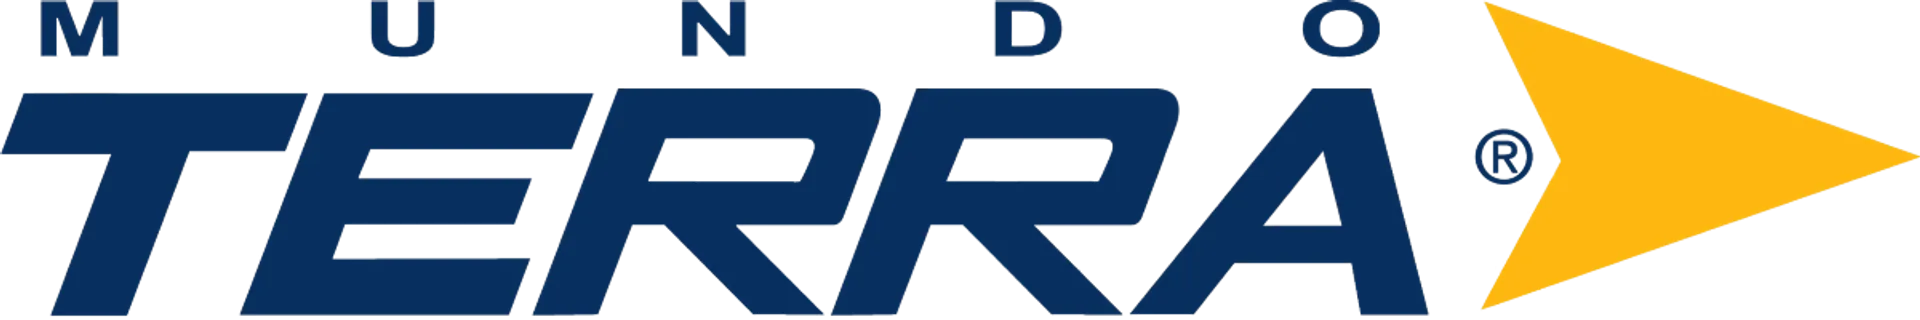 MUNDO TERRA logo